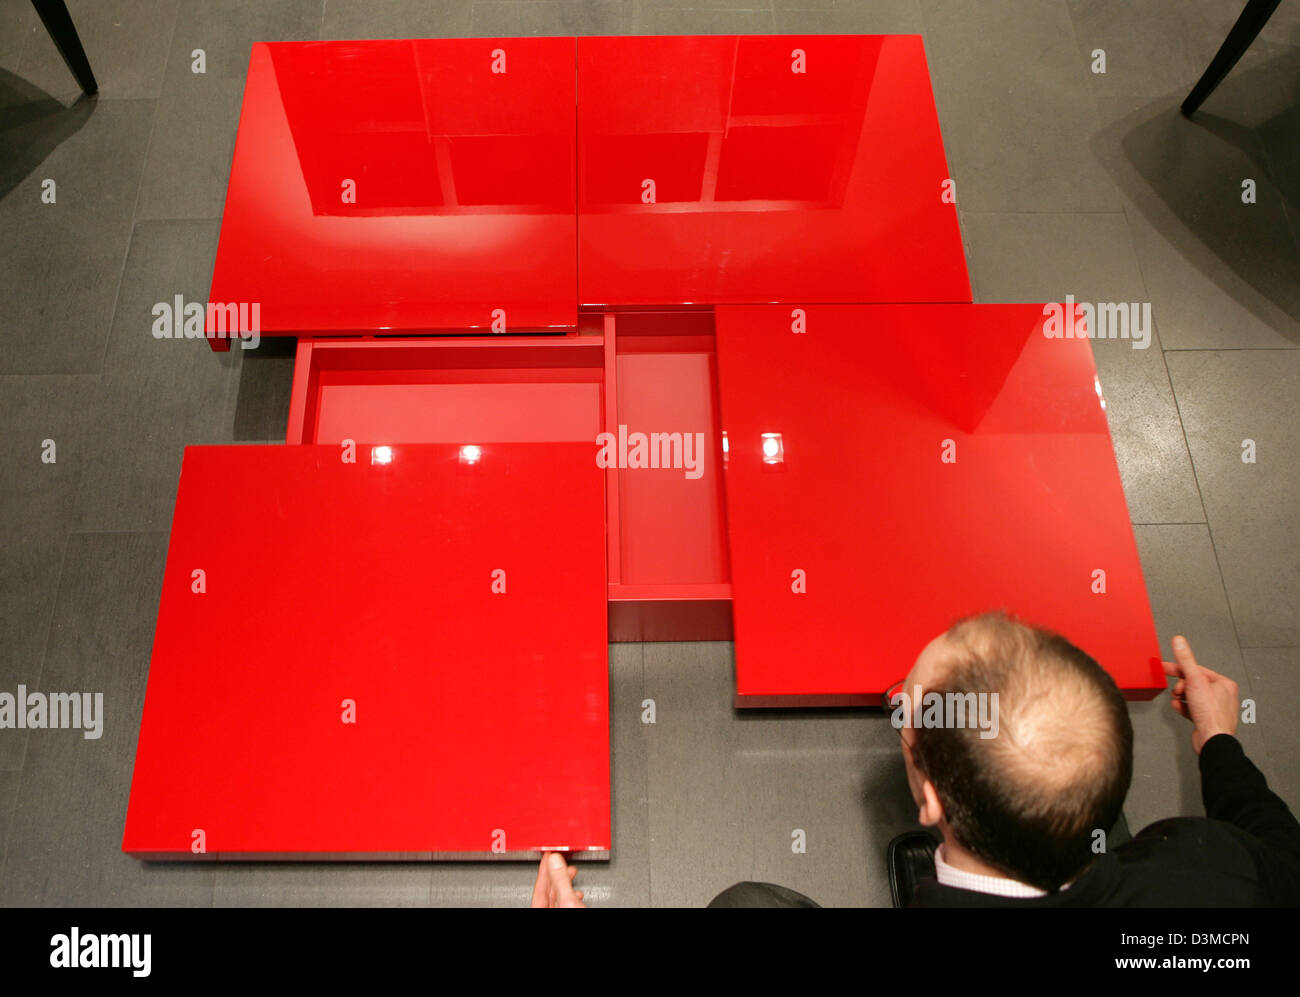 Alfred Roos, Geschäftsführer von Conde House Europe GmbH, ein japanischer  Hersteller von Möbeln, präsentiert einen rot gefärbten Hochglanz Couchtisch  im Ausstellungsraum eine Niederlassung in Köln, Deutschland, Donnerstag,  26. Januar 2006. Der Marktführer